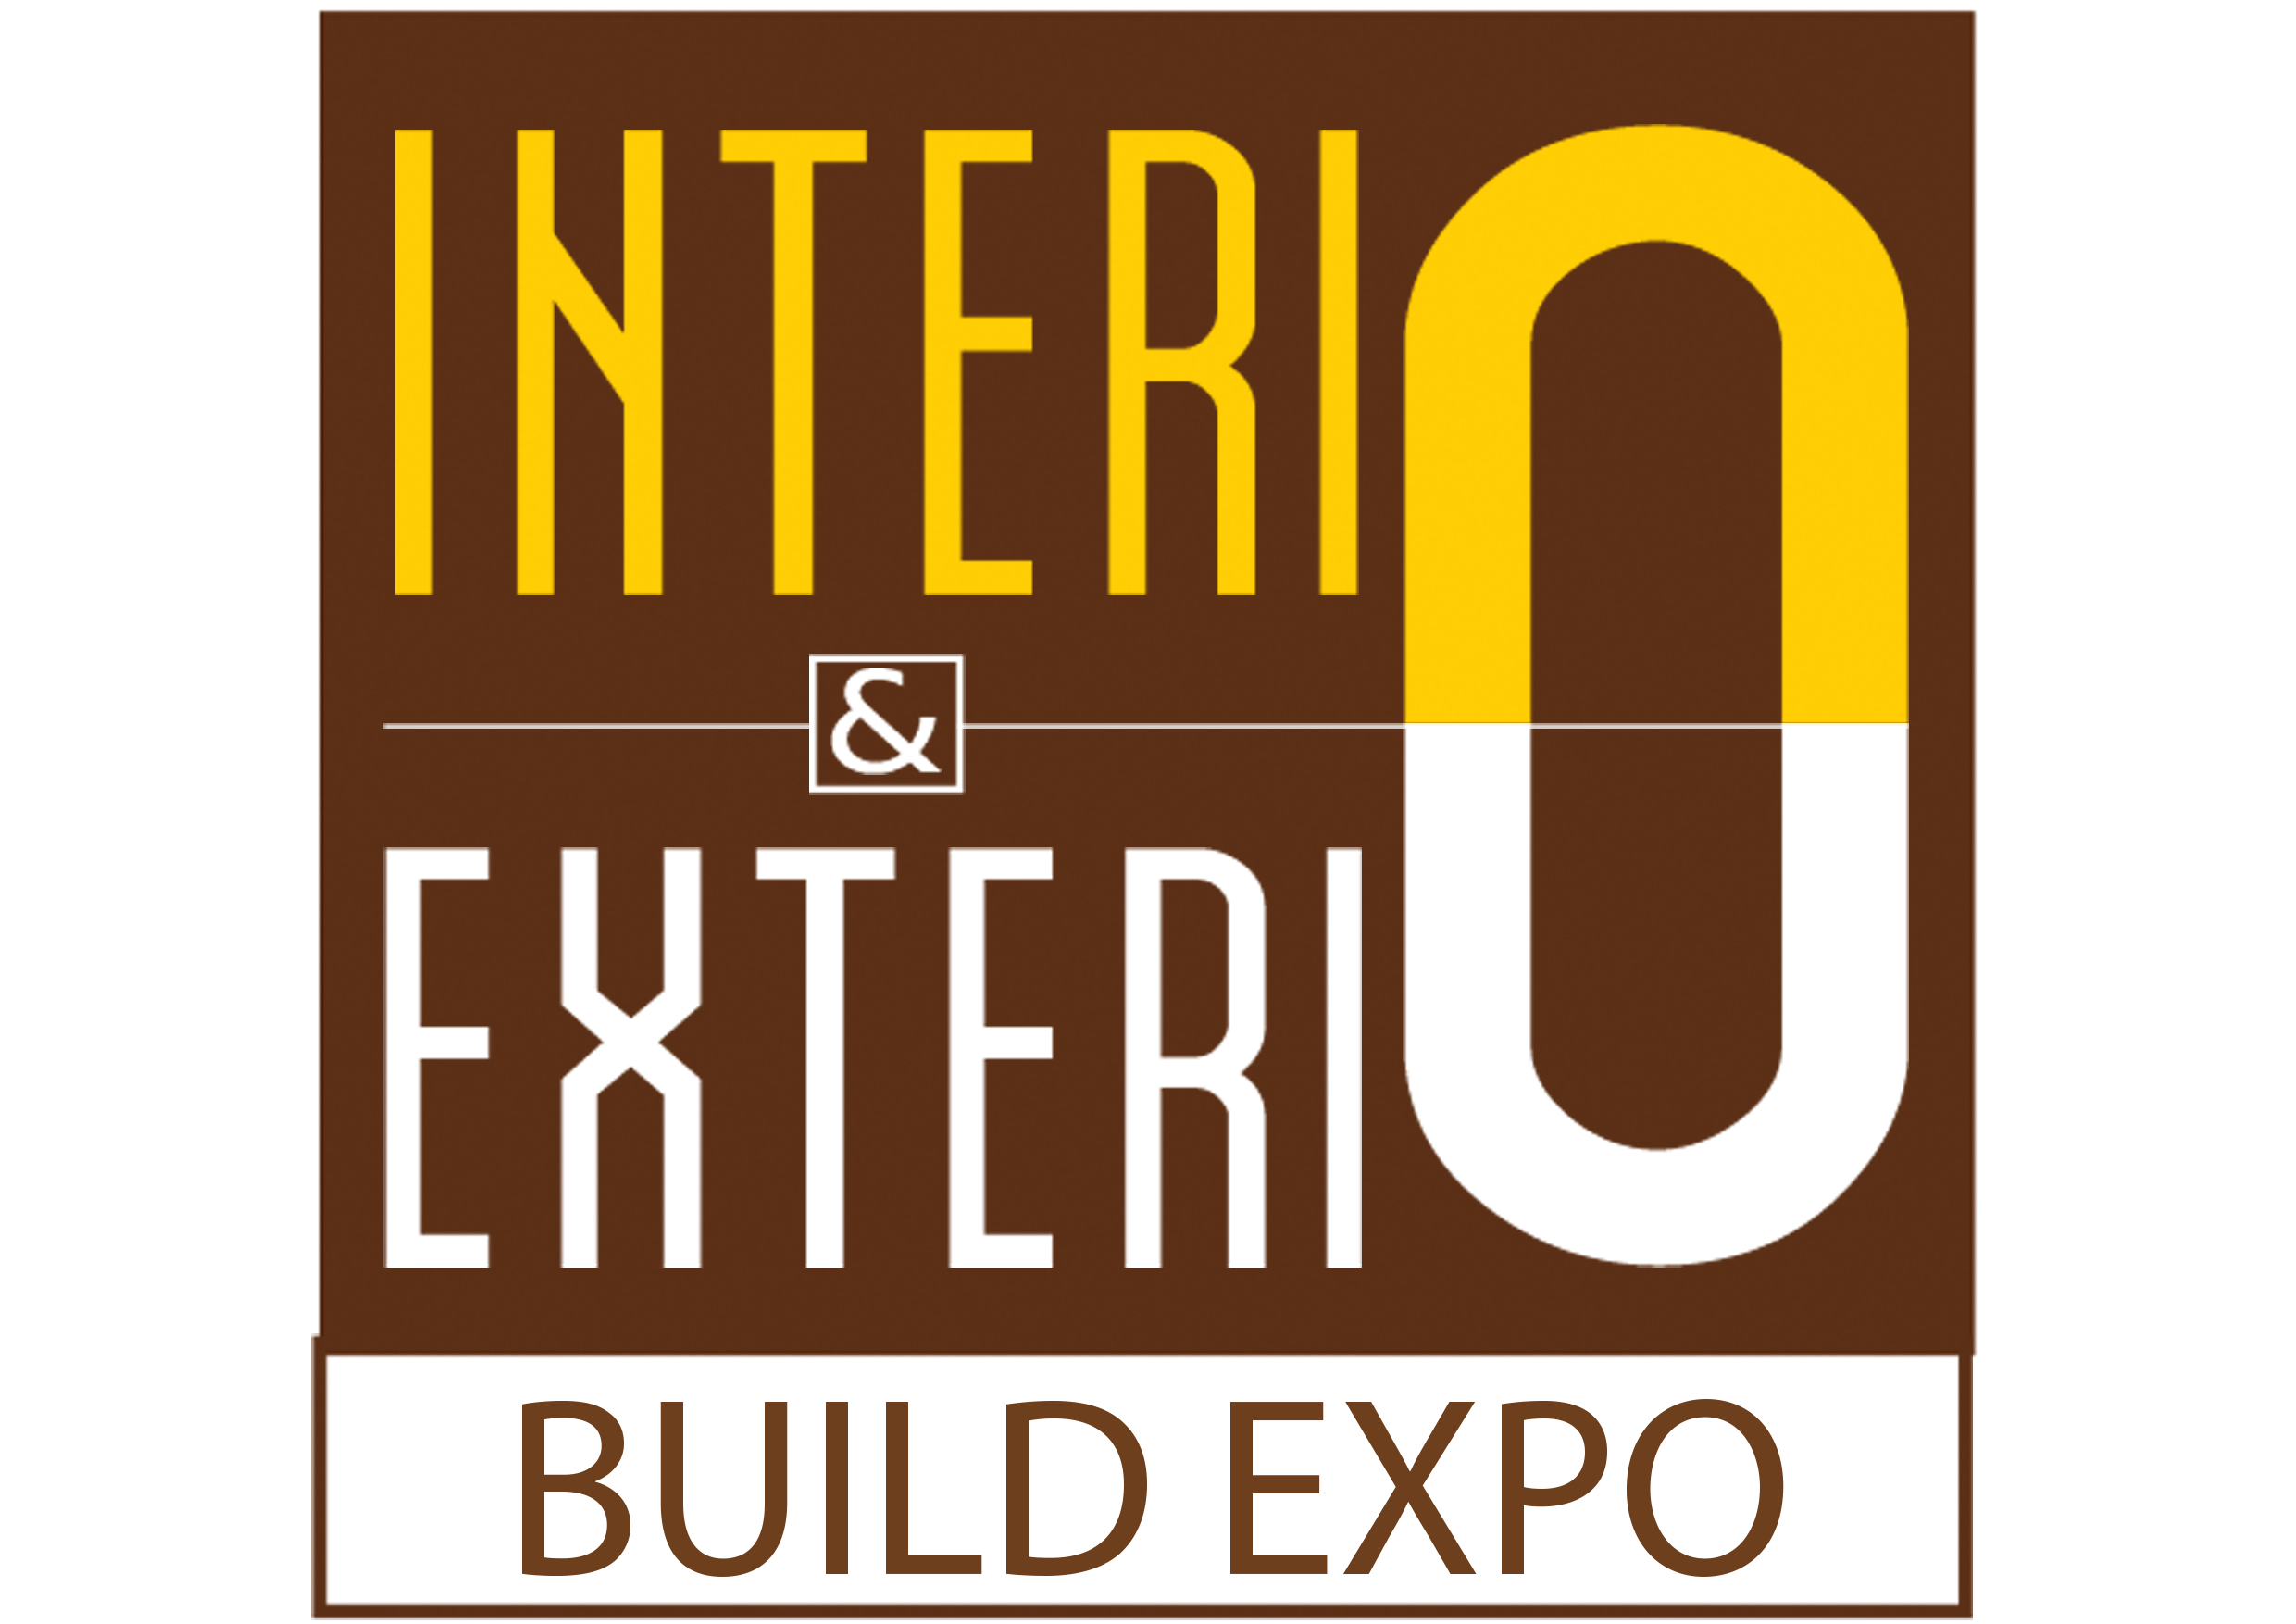 Interio & Exterio Expo